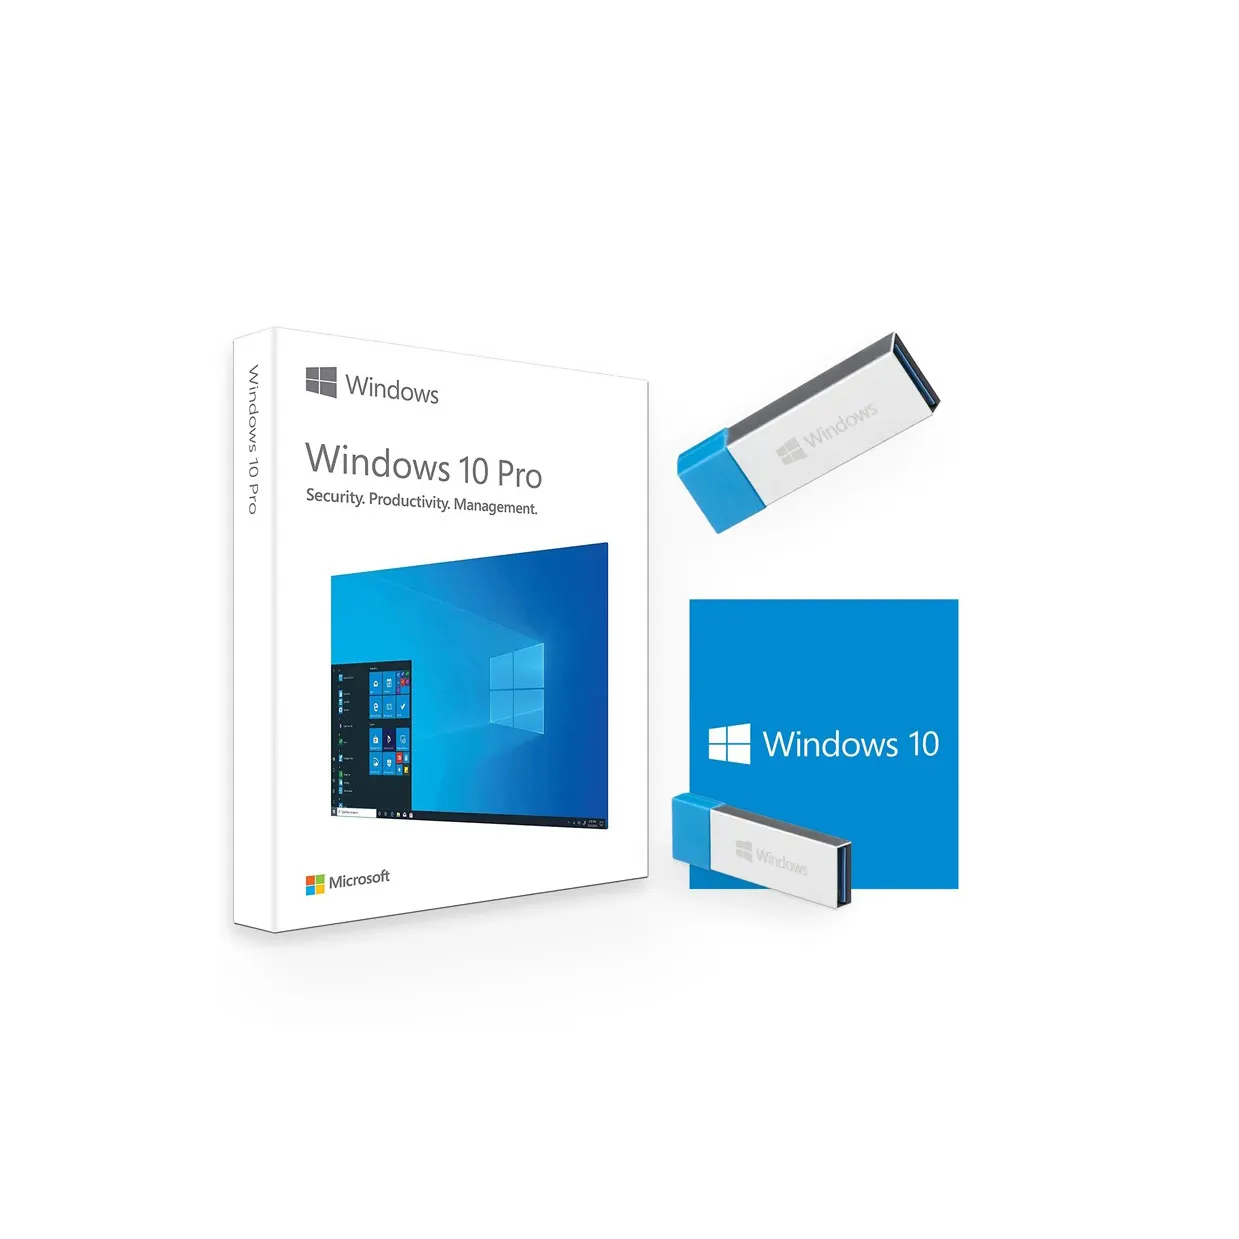 Windows 10 Pro (originale) chiave di licenza digitale (consegna e-mail in 2 ore) durata validità 1 PC, 1 utente